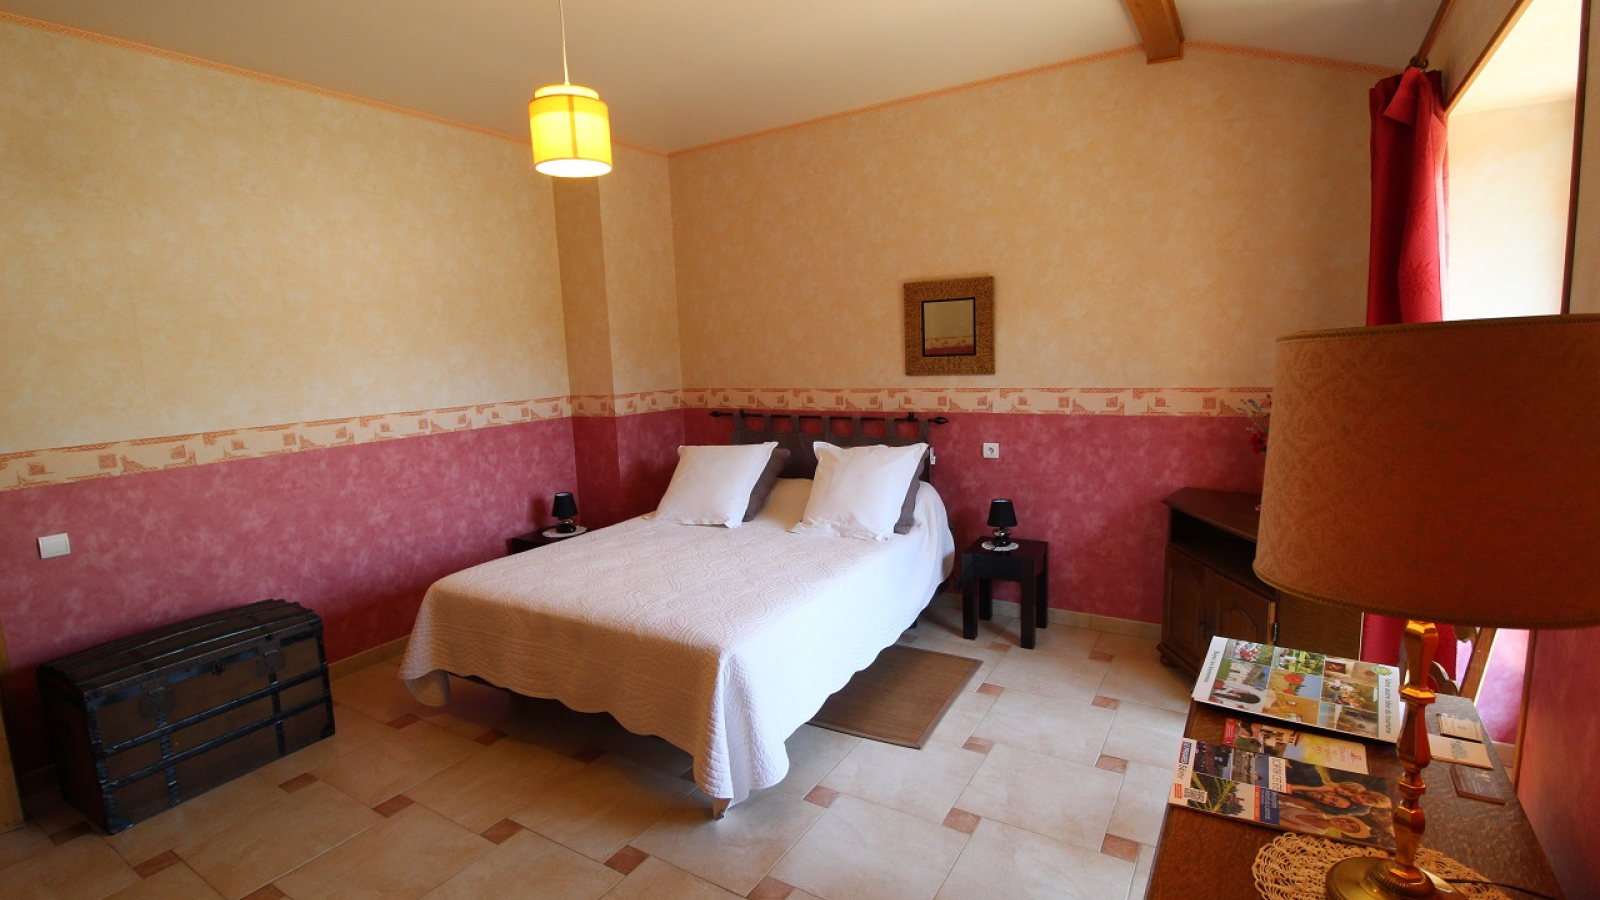 Chambre d'hôtes du 'Domaine des Fondsbenites' à Sainte-Paule (Rhône-Beaujolais) : la chambre (lit 2 personnes).